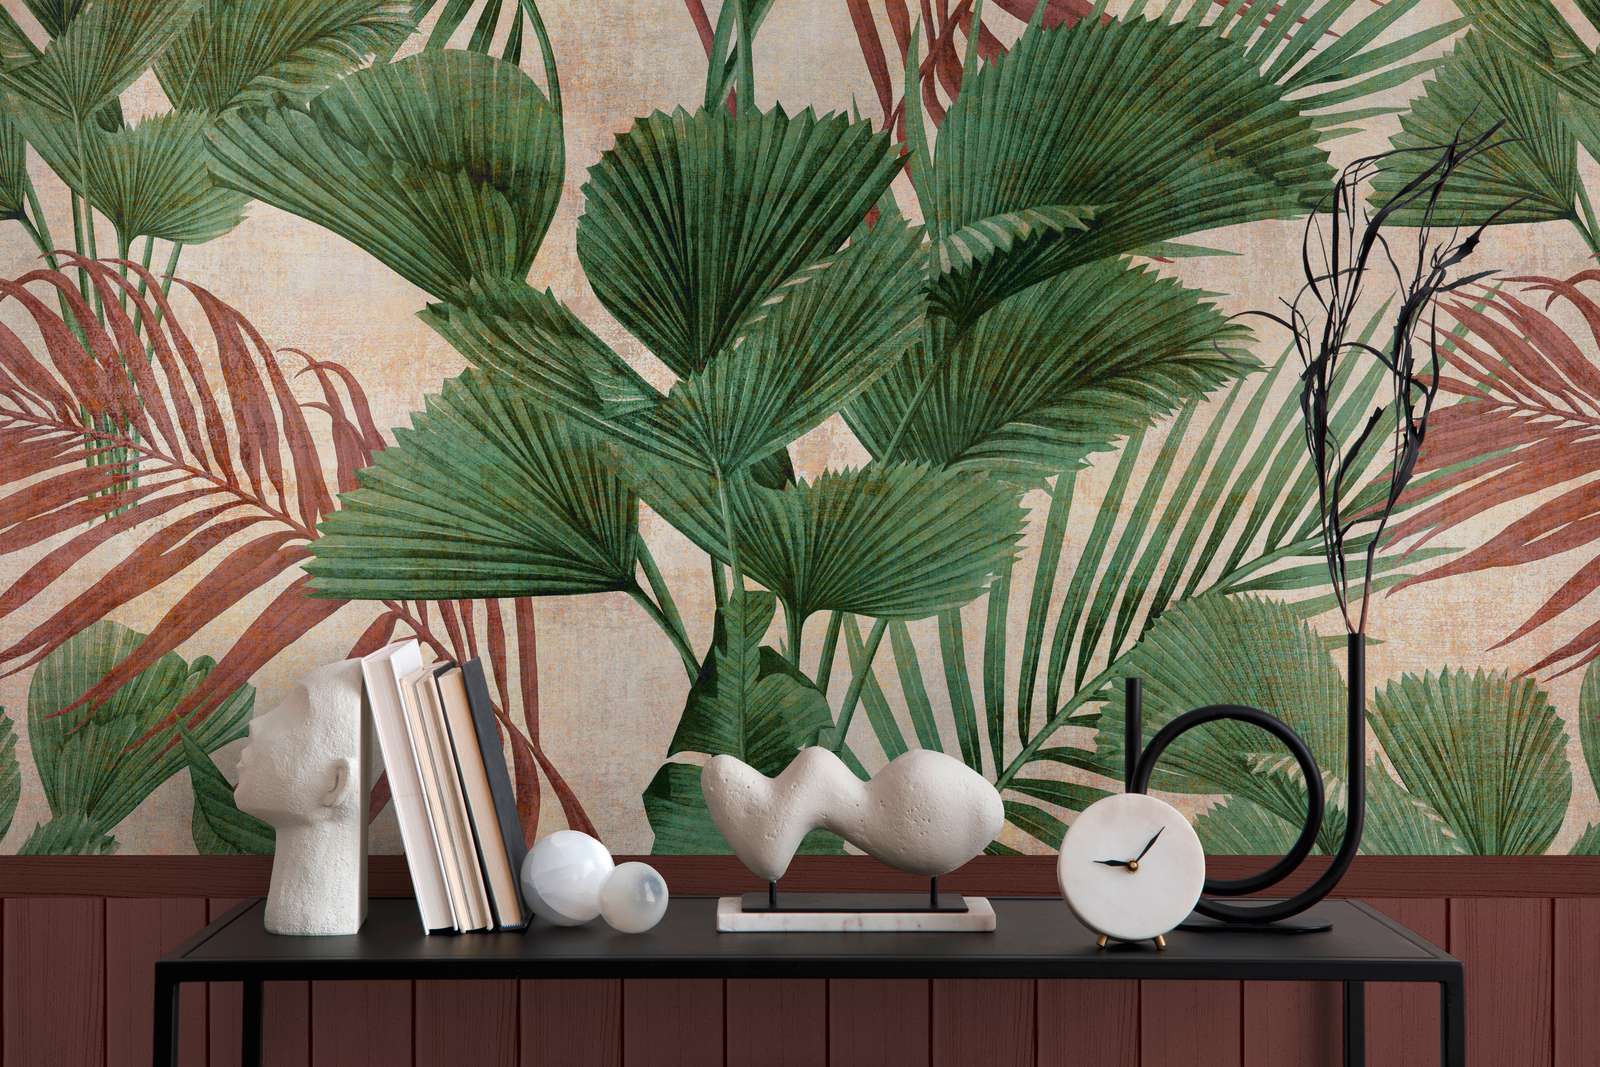             papier peint en papier intissé à motifs avec bordure de plinthe imitation bois et motif jungle - rouge, vert, beige
        